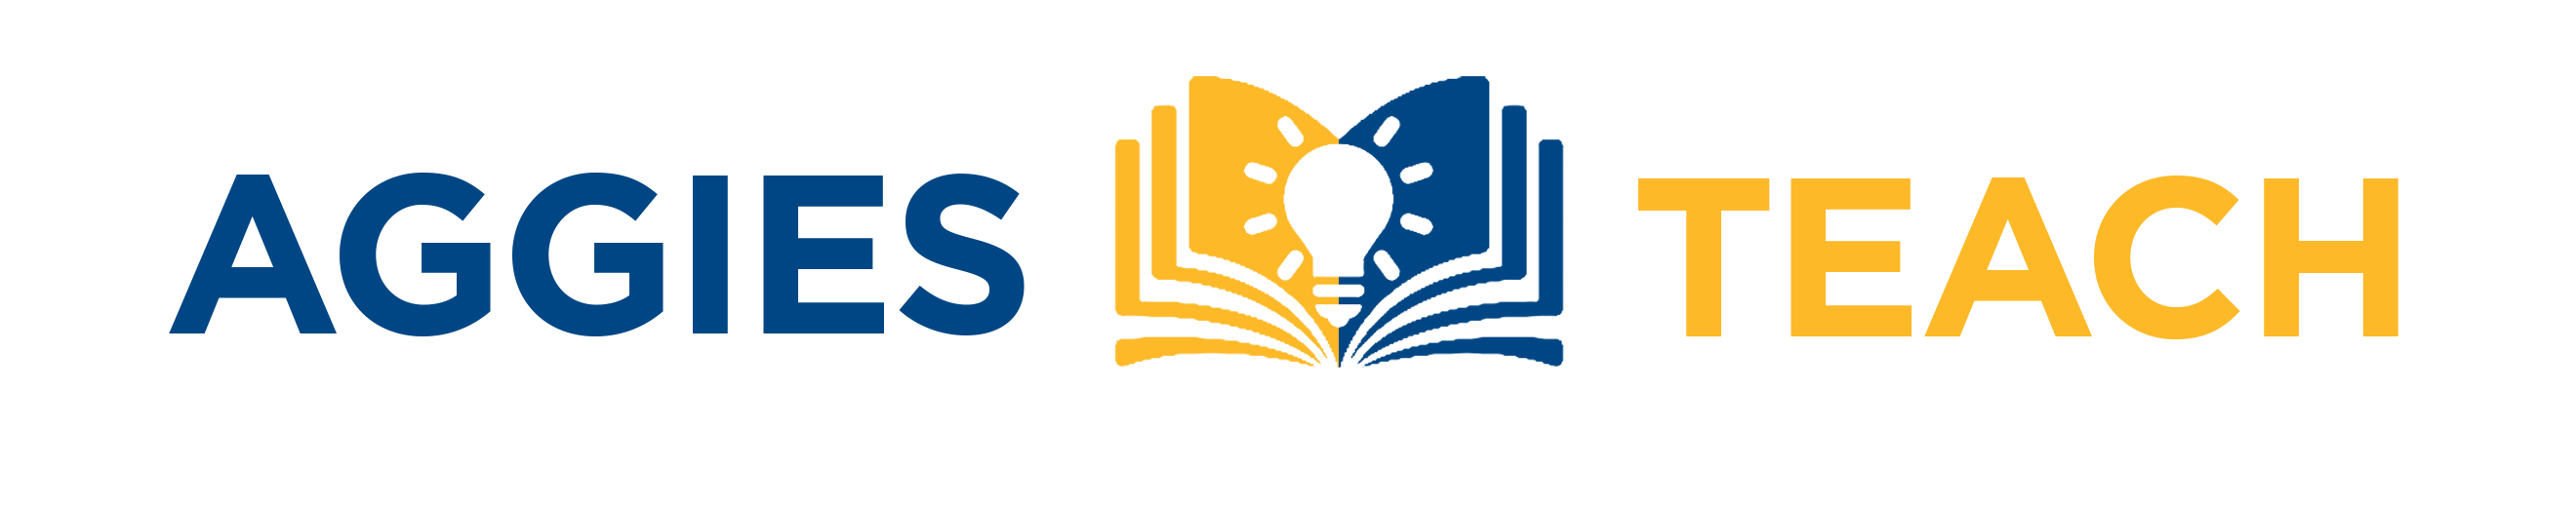 Aggies Teach logo: Aggies Teach text with lightbulb over open book